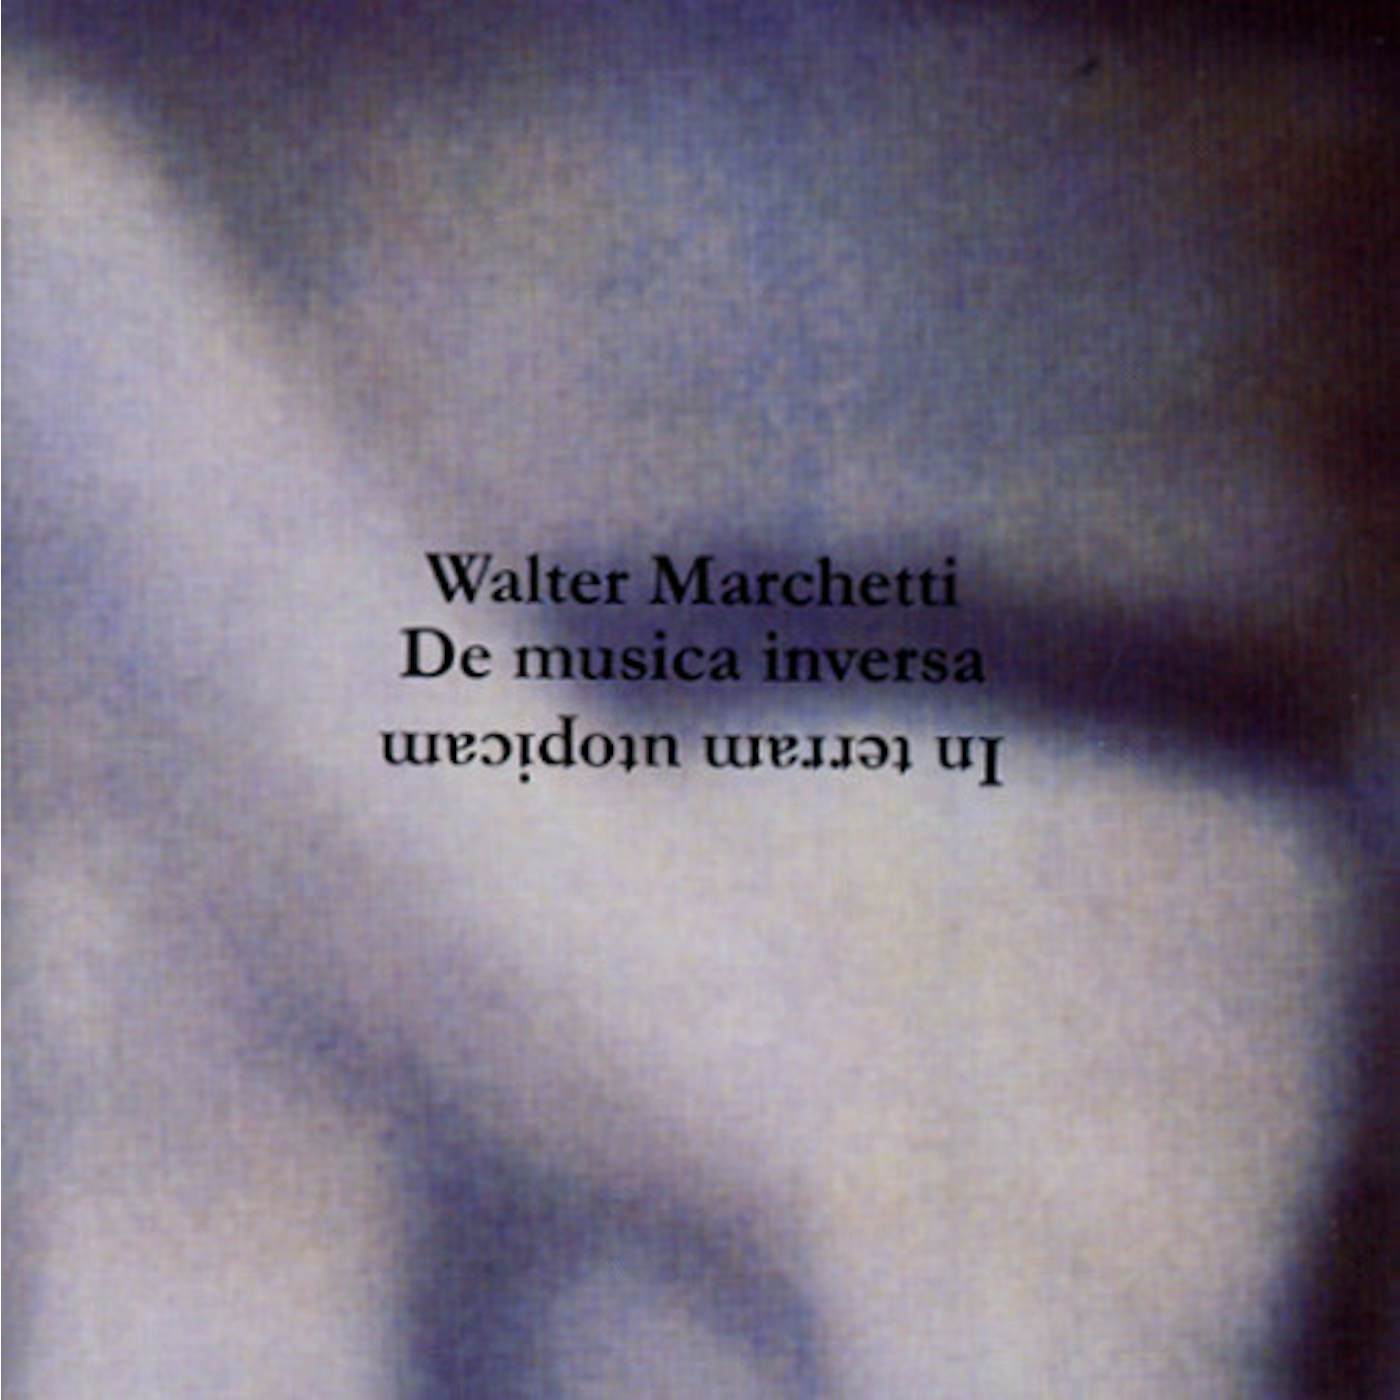 Walter Marchetti IN TERRAM UTOPICAM CD